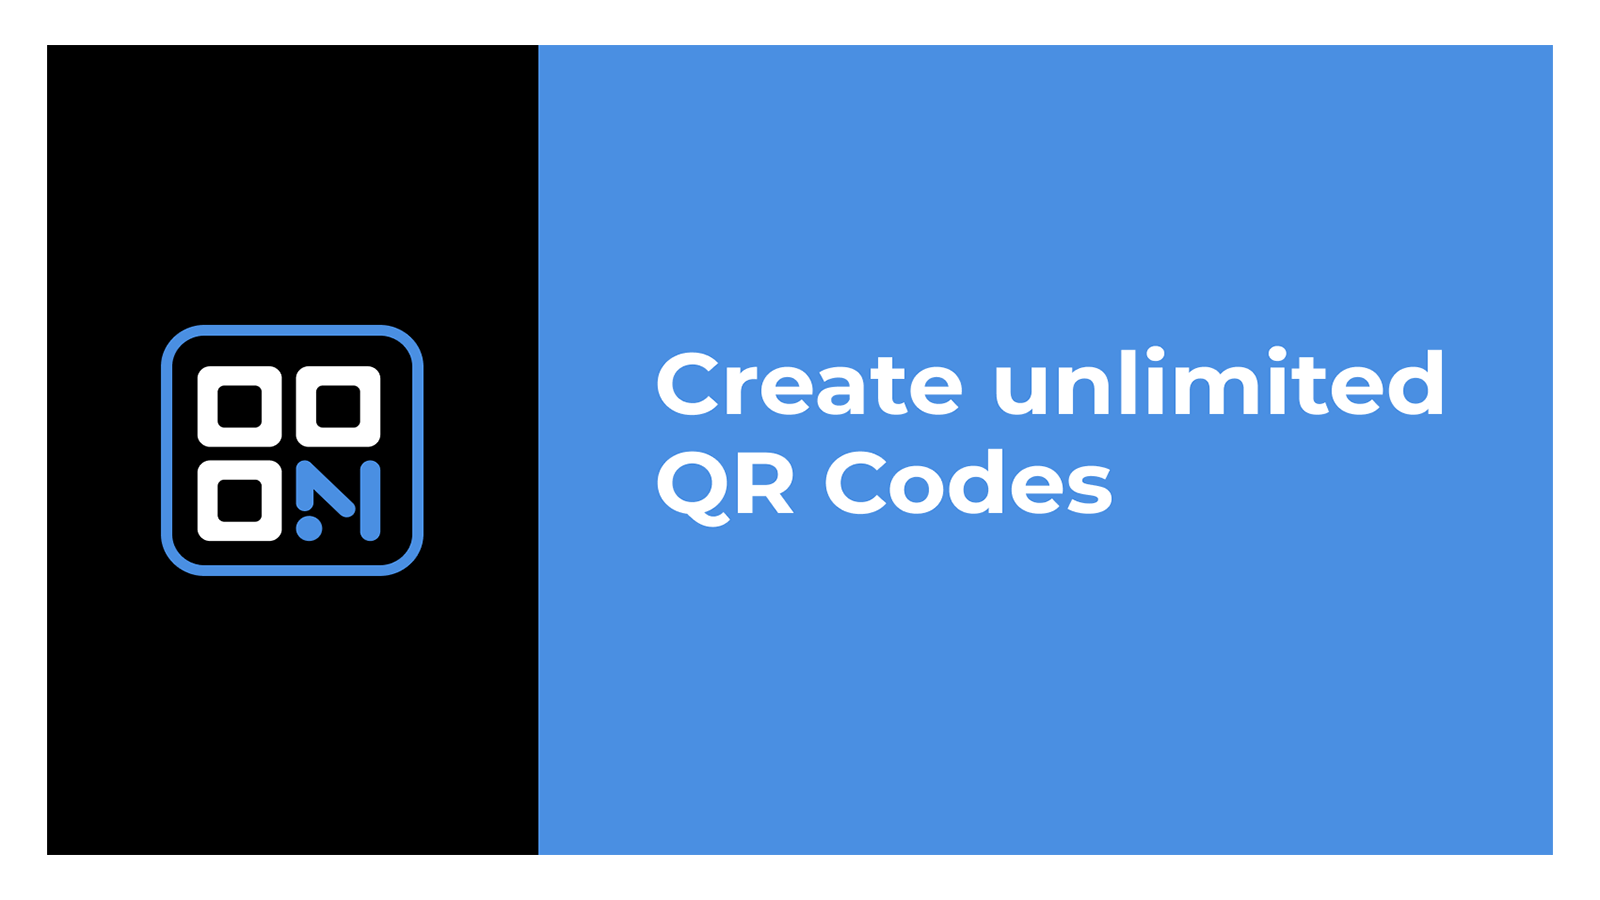 Erstellen Sie unbegrenzt QR-Codes